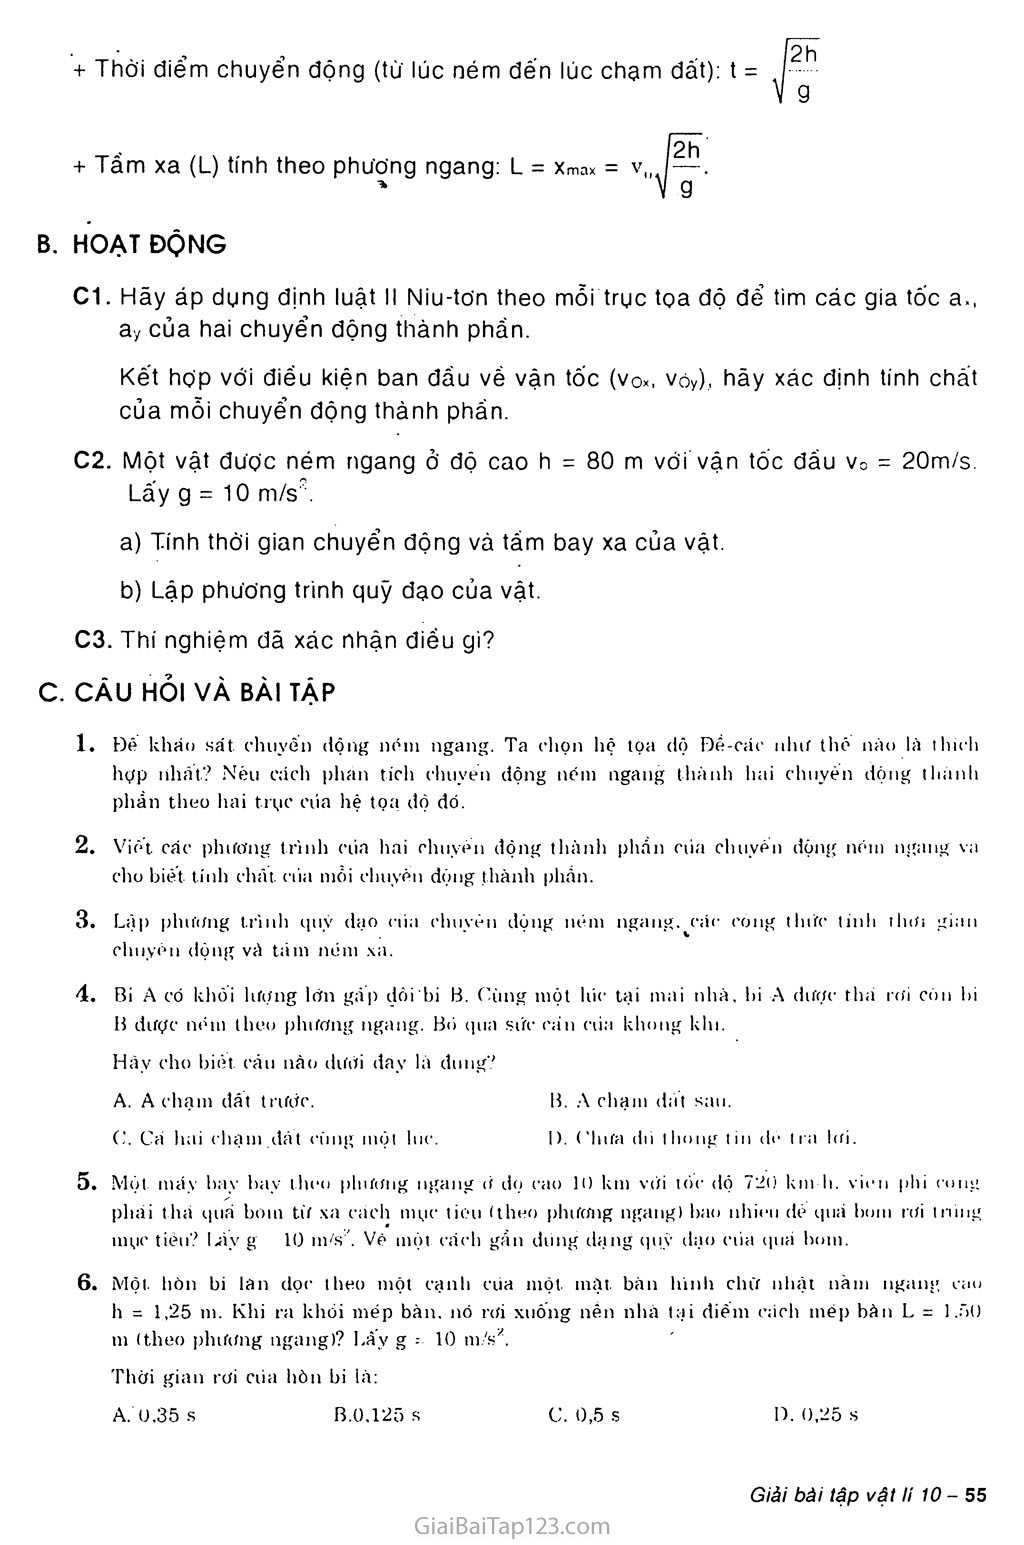 Bài 15: Bài toán về chuyển động ném ngang trang 2